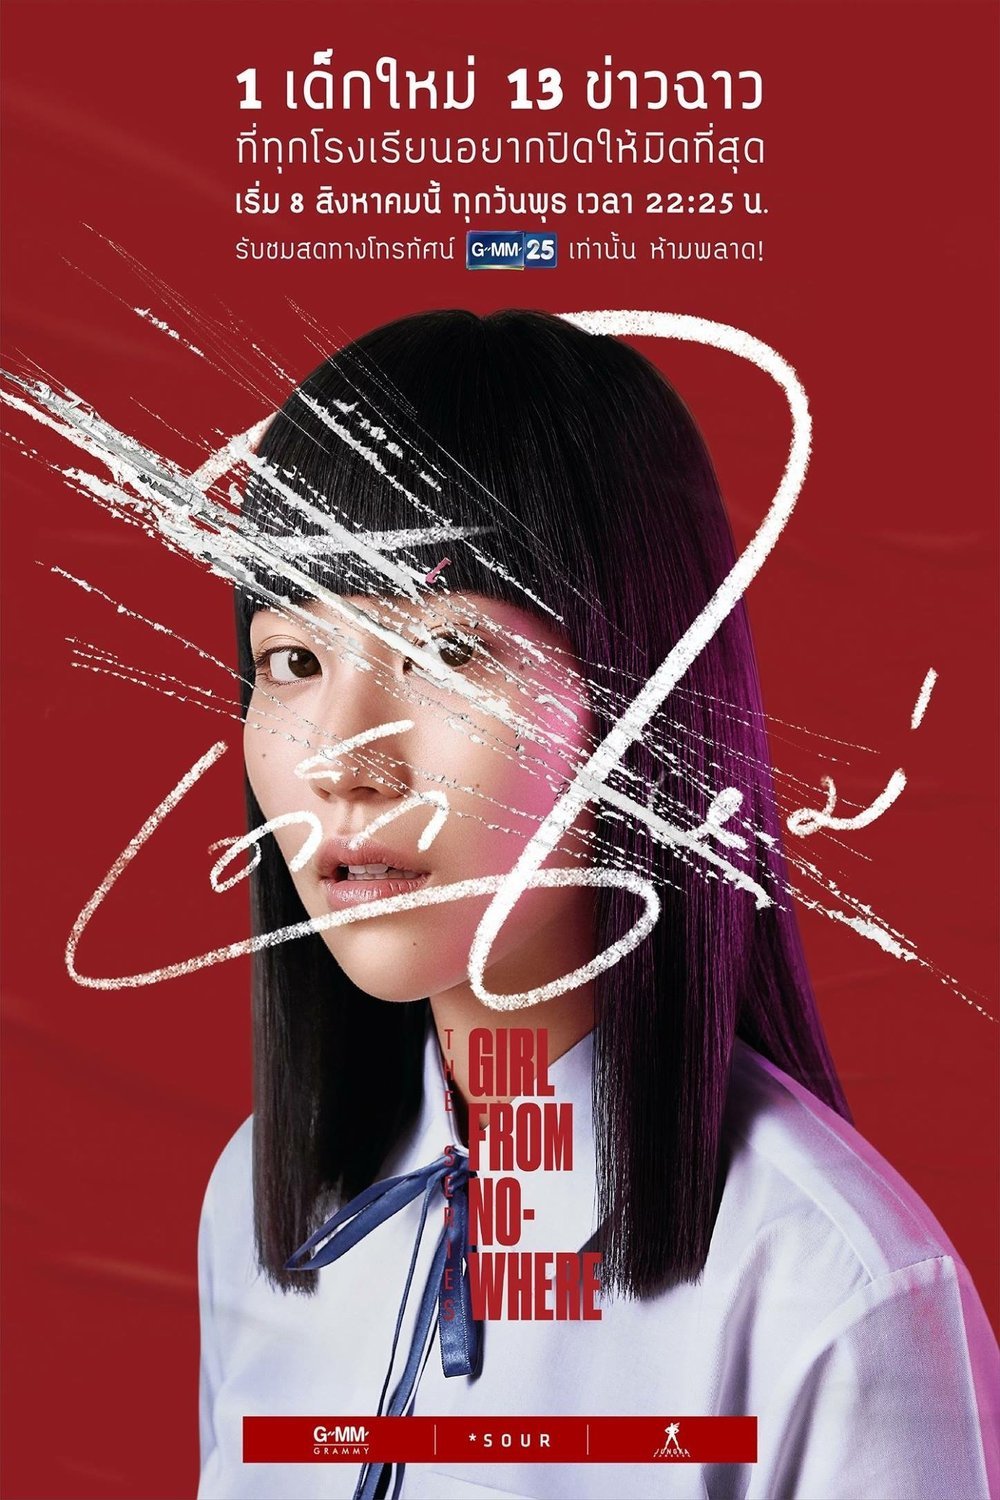 L'affiche originale du film Girl from Nowhere en Thaïlandais